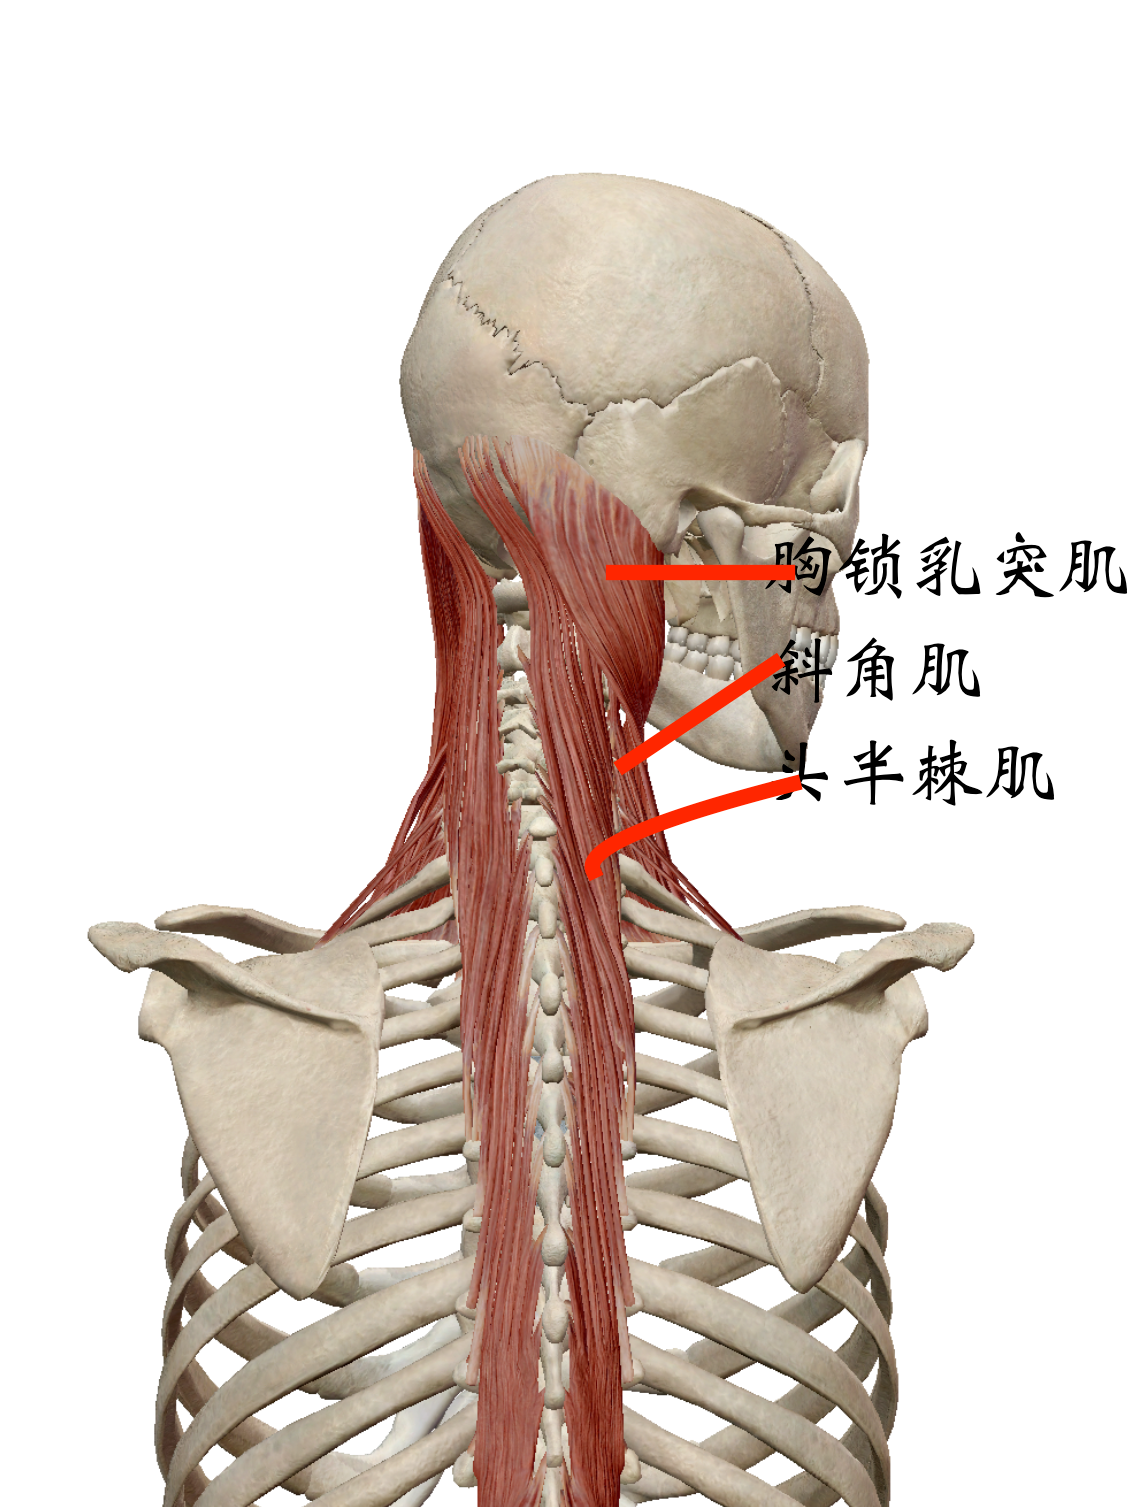 石运龙 的想法: 瑜伽理疗精髓论文0156-肩颈疼痛(假设) … - 知乎